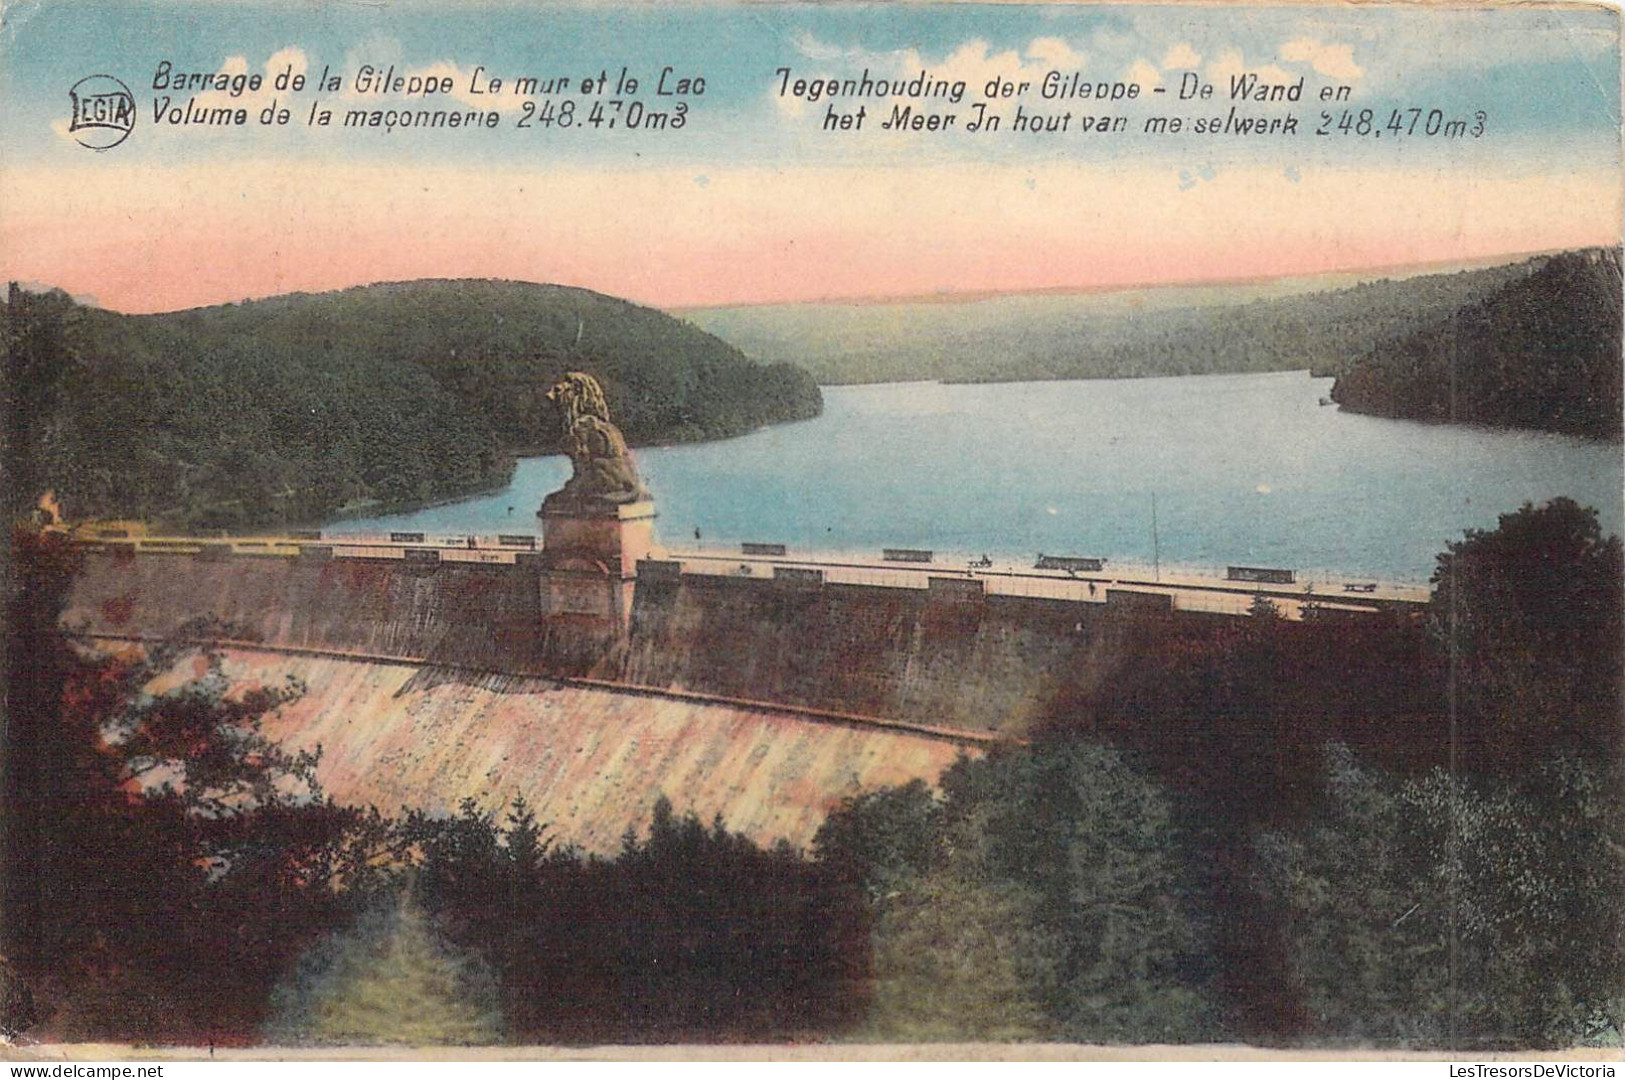 BELGIQUE - GILEPPE - Barrage De La Gileppe Le Mur Et Le Lac - Volume De La Maconnerie 248 470 M - Carte Postale Ancienne - Gileppe (Dam)